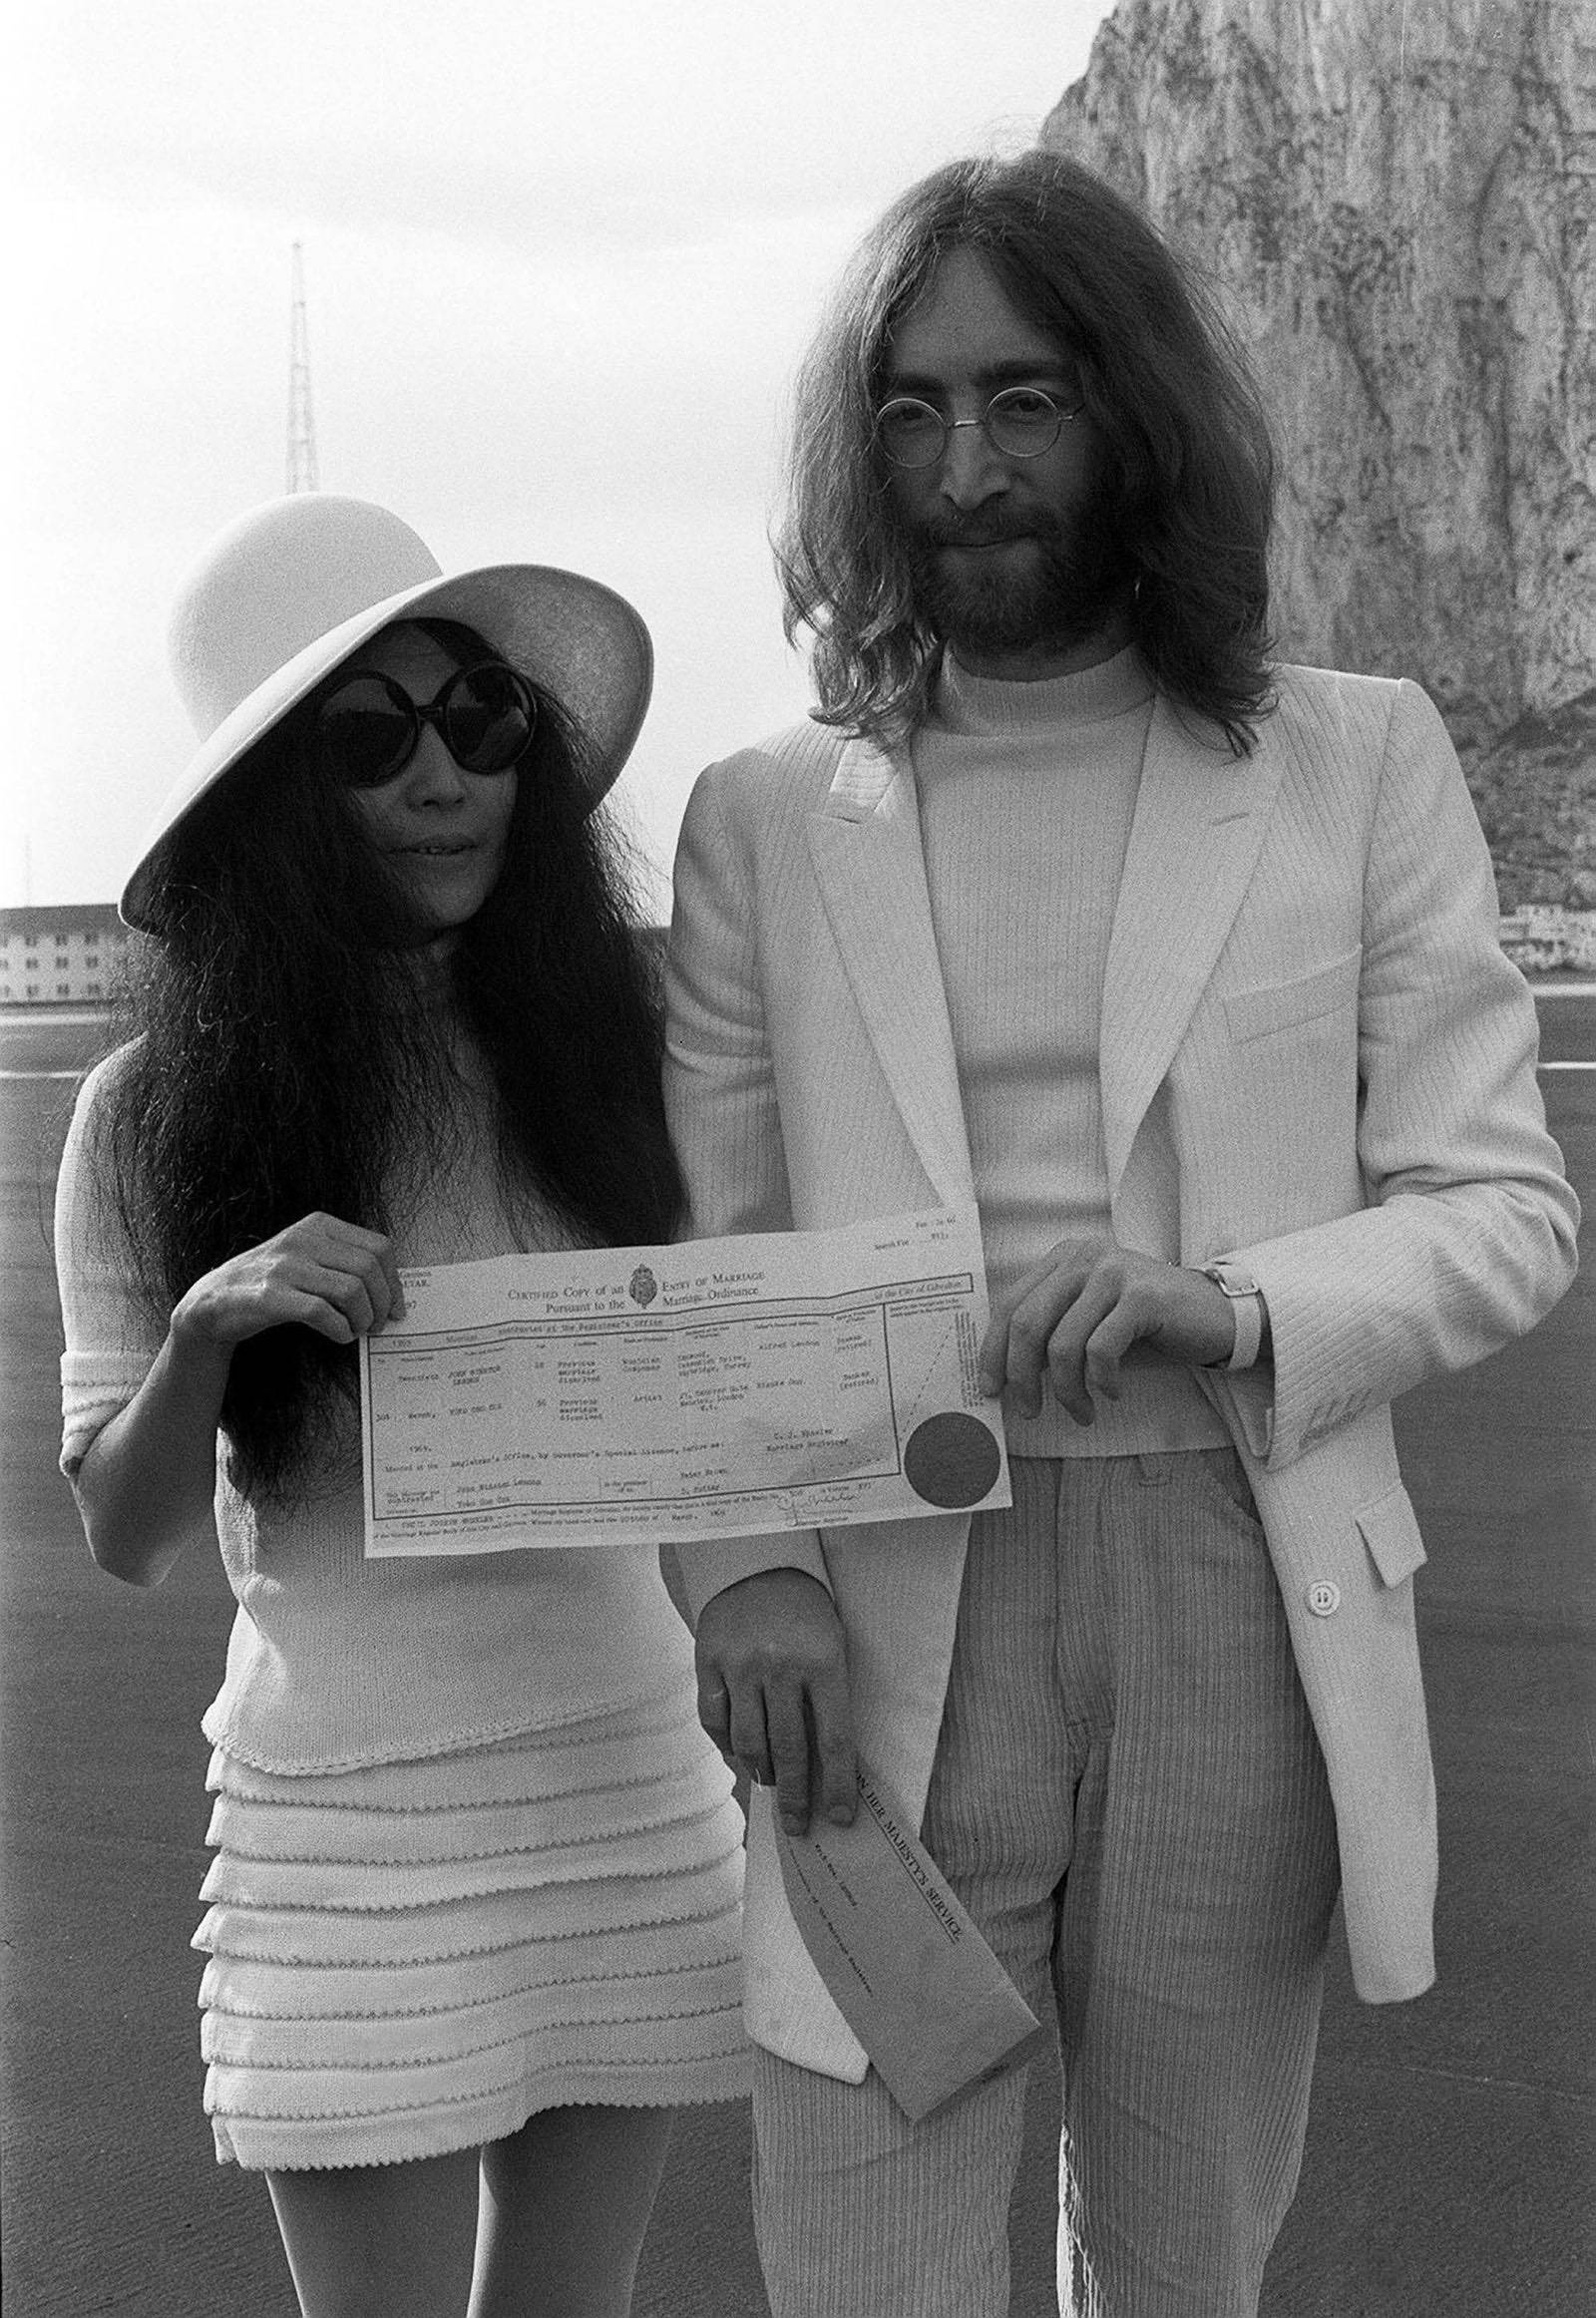 Yoko Ono's wedding dress